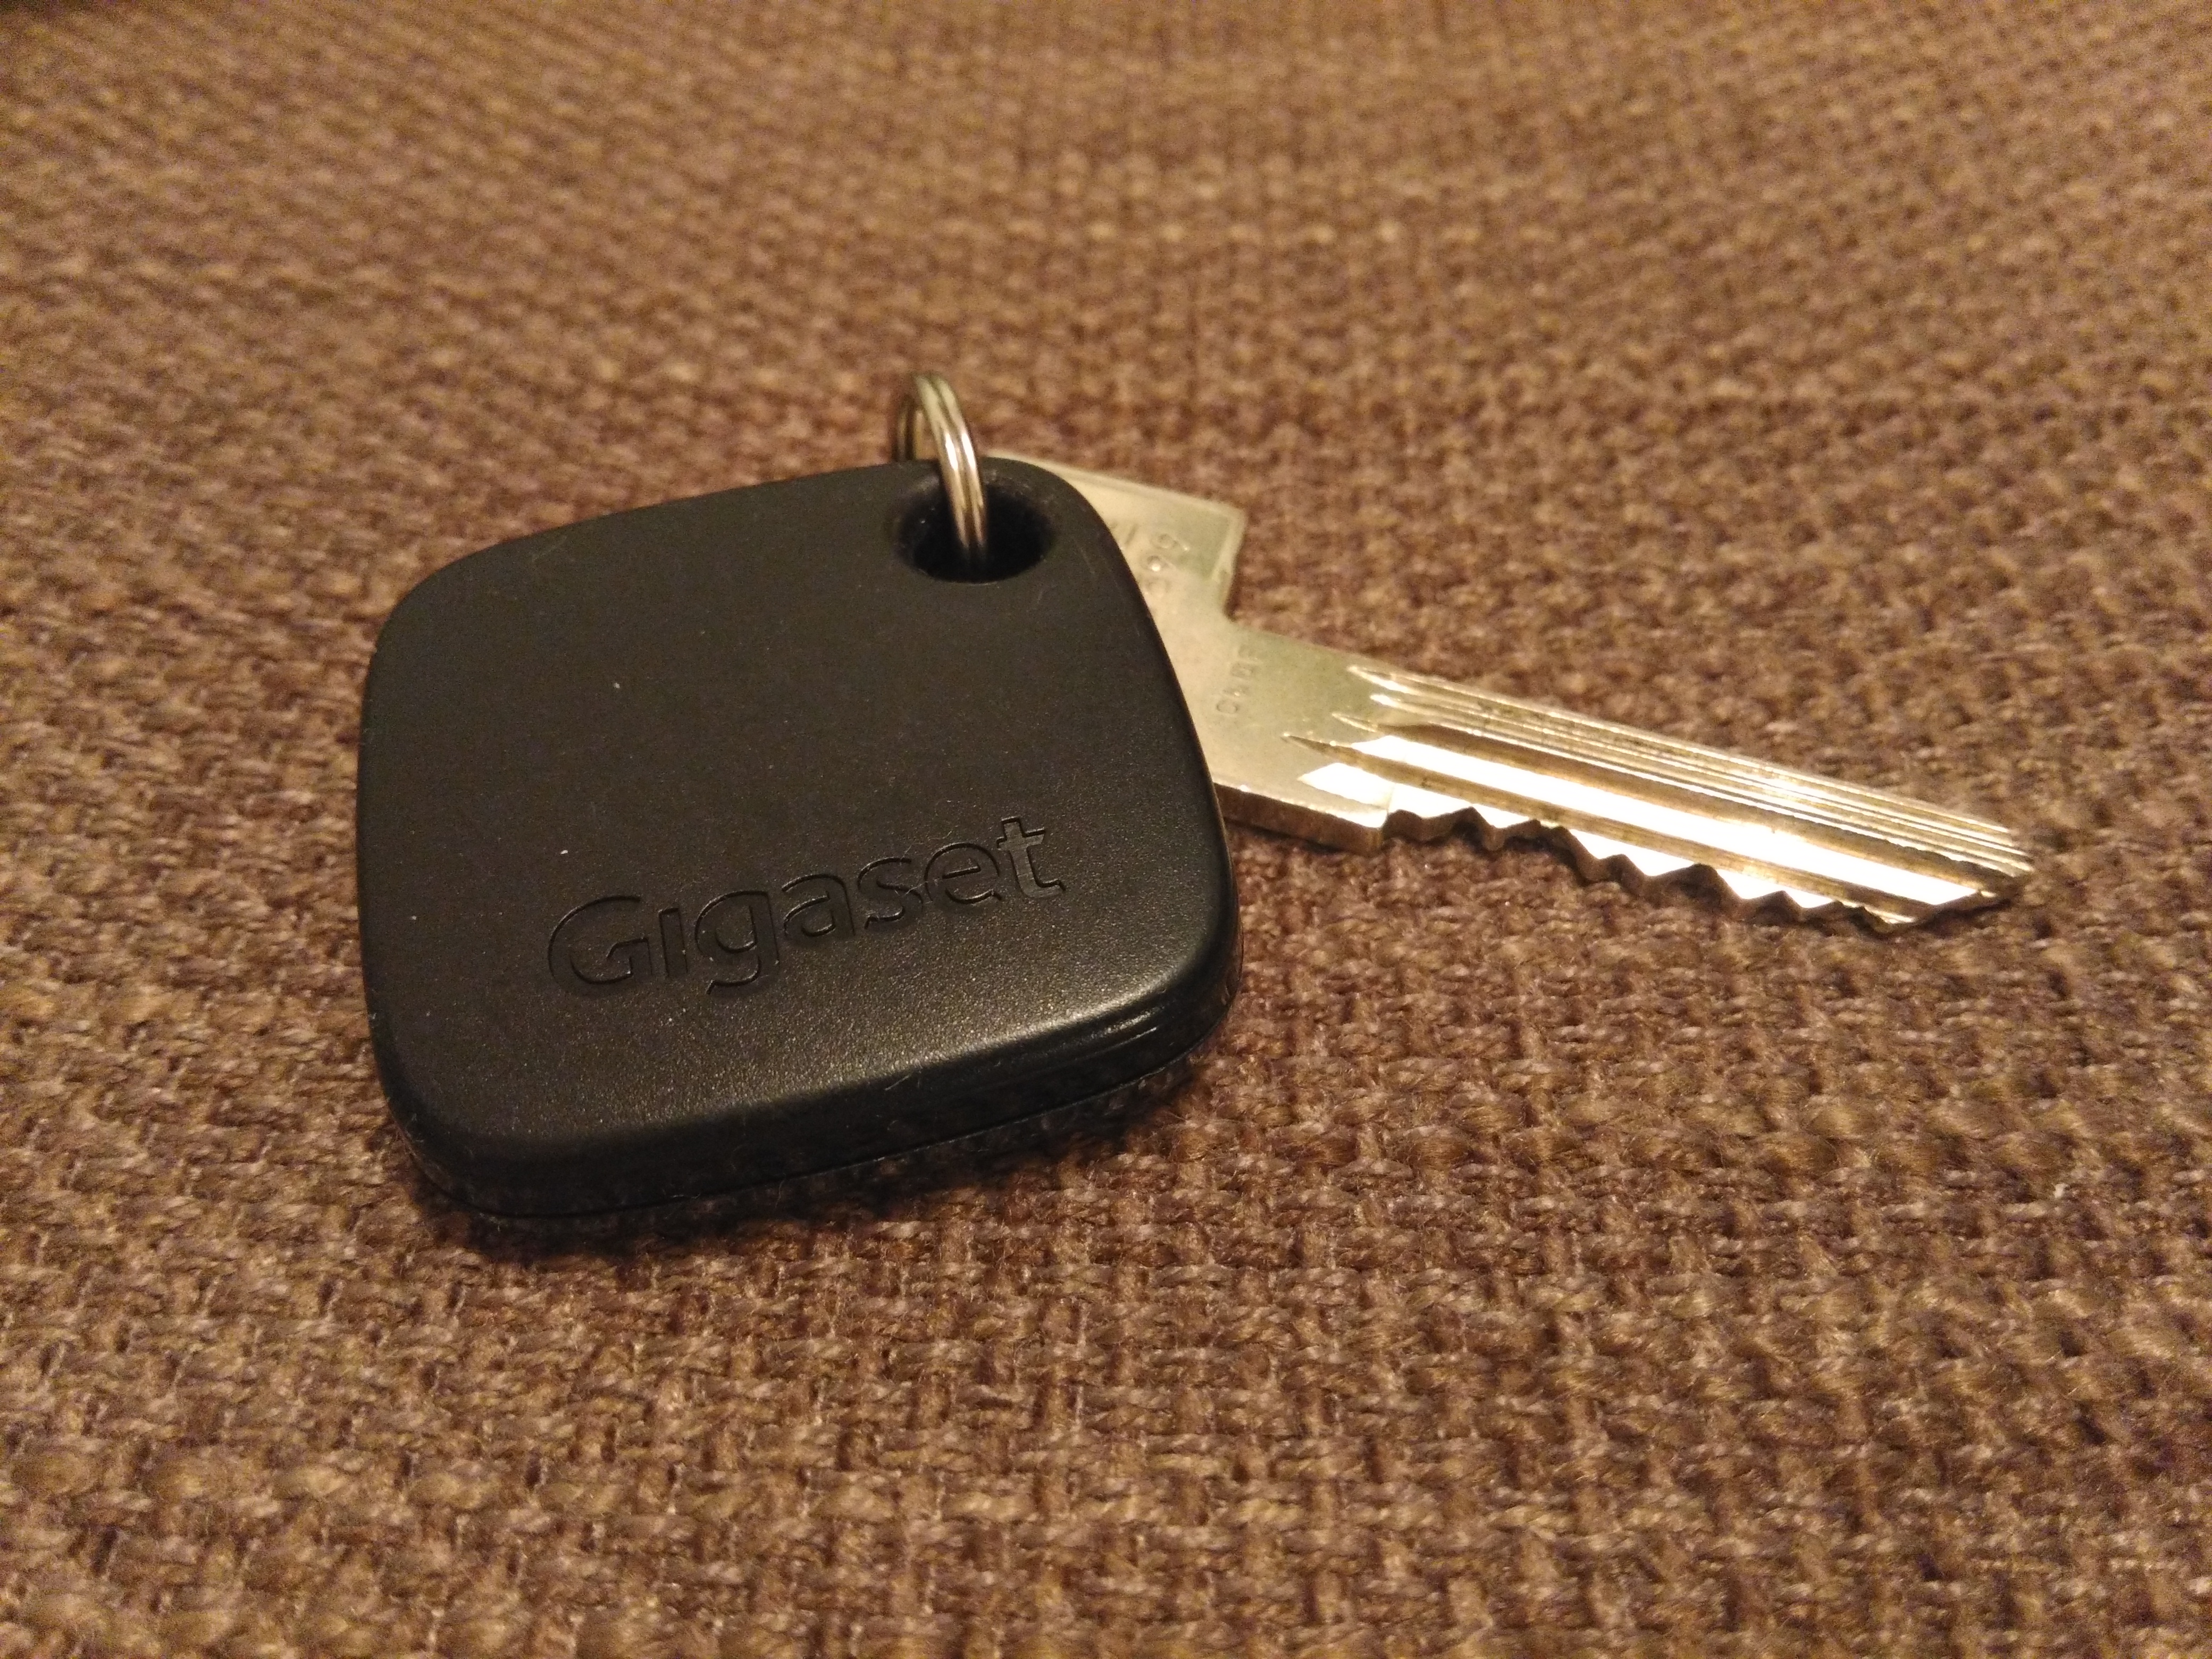 Key Tracker Handys Bluetooth Schlüsselfinder zum einfachen Auffinden von Schlüssel Koffern orange Gigaset G-tag Beacon mit Appfunktion Taschen